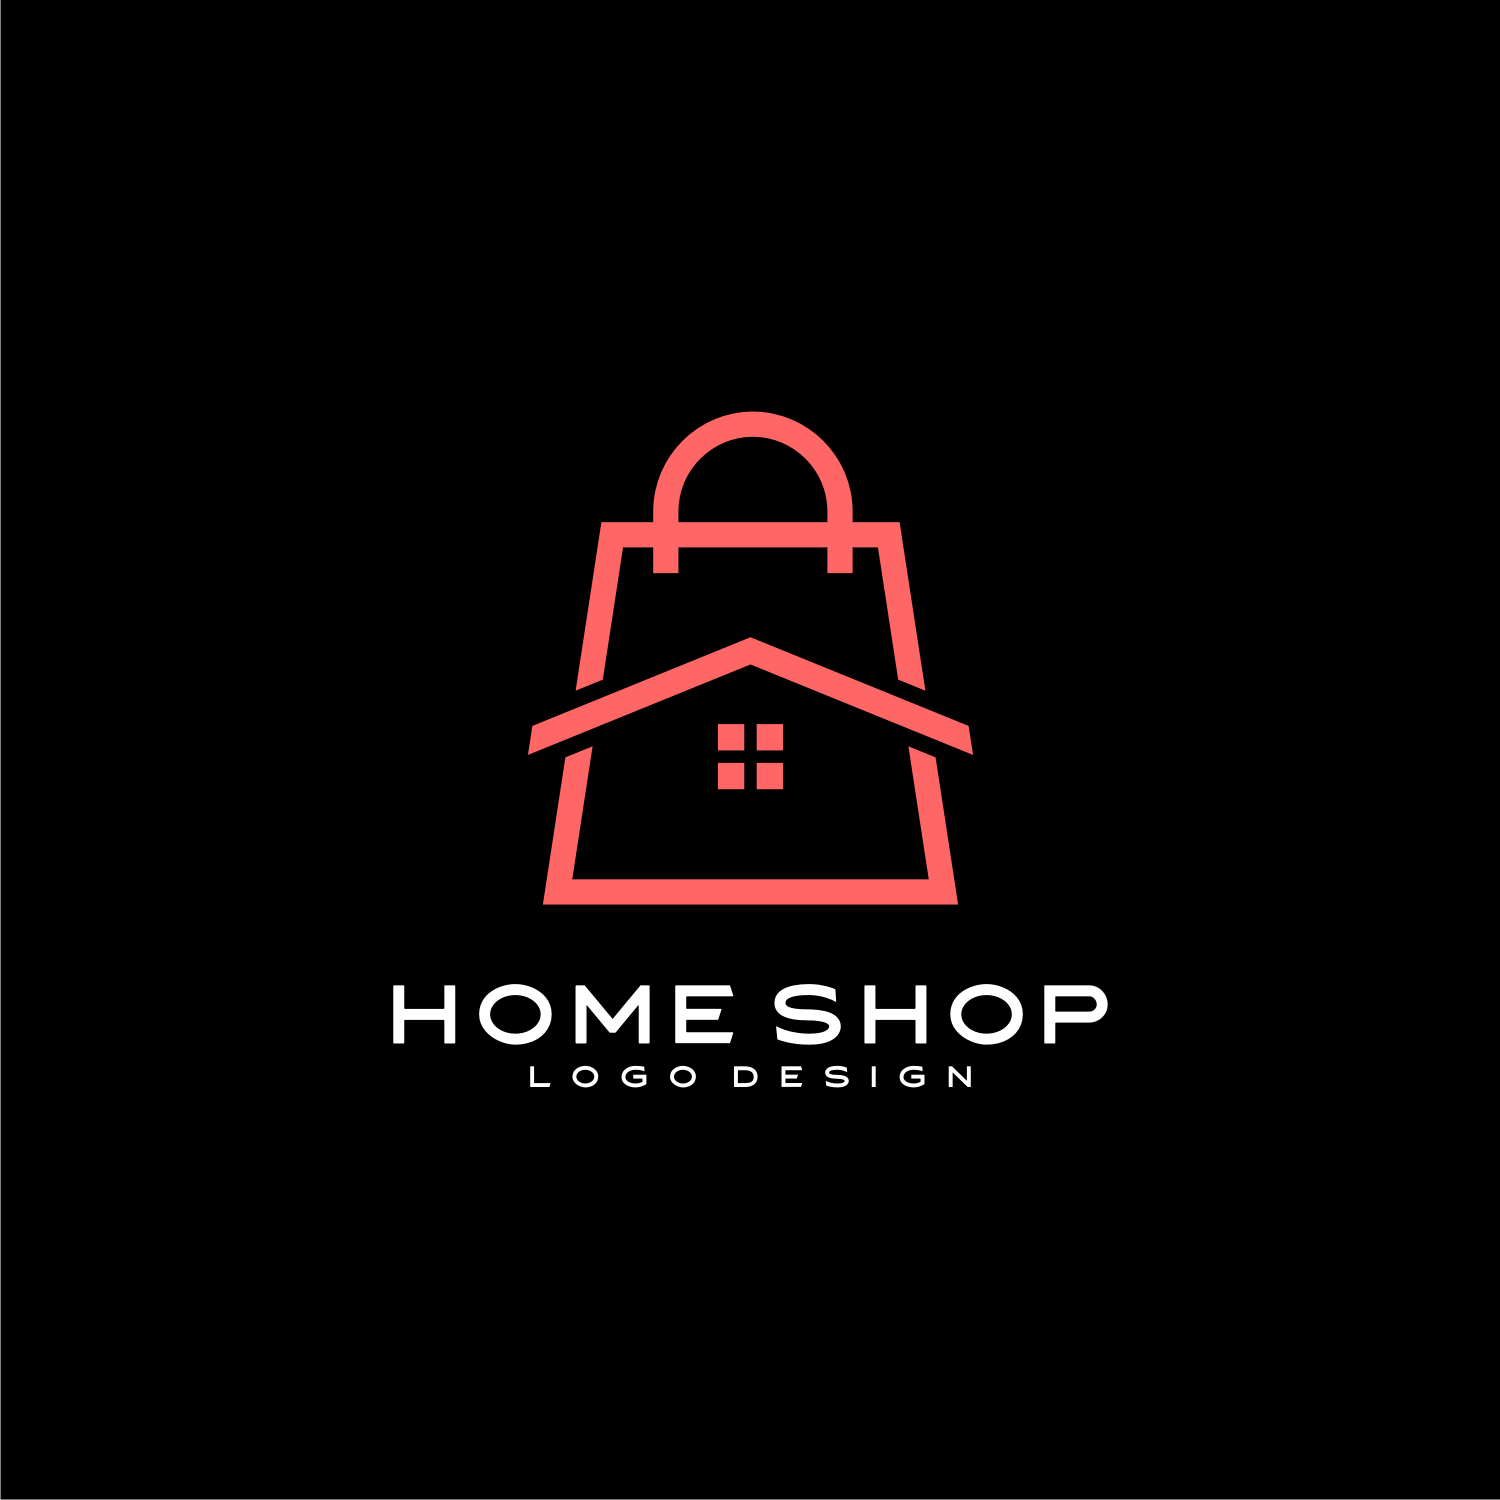 Home Shop Logo Vector Design cover image.